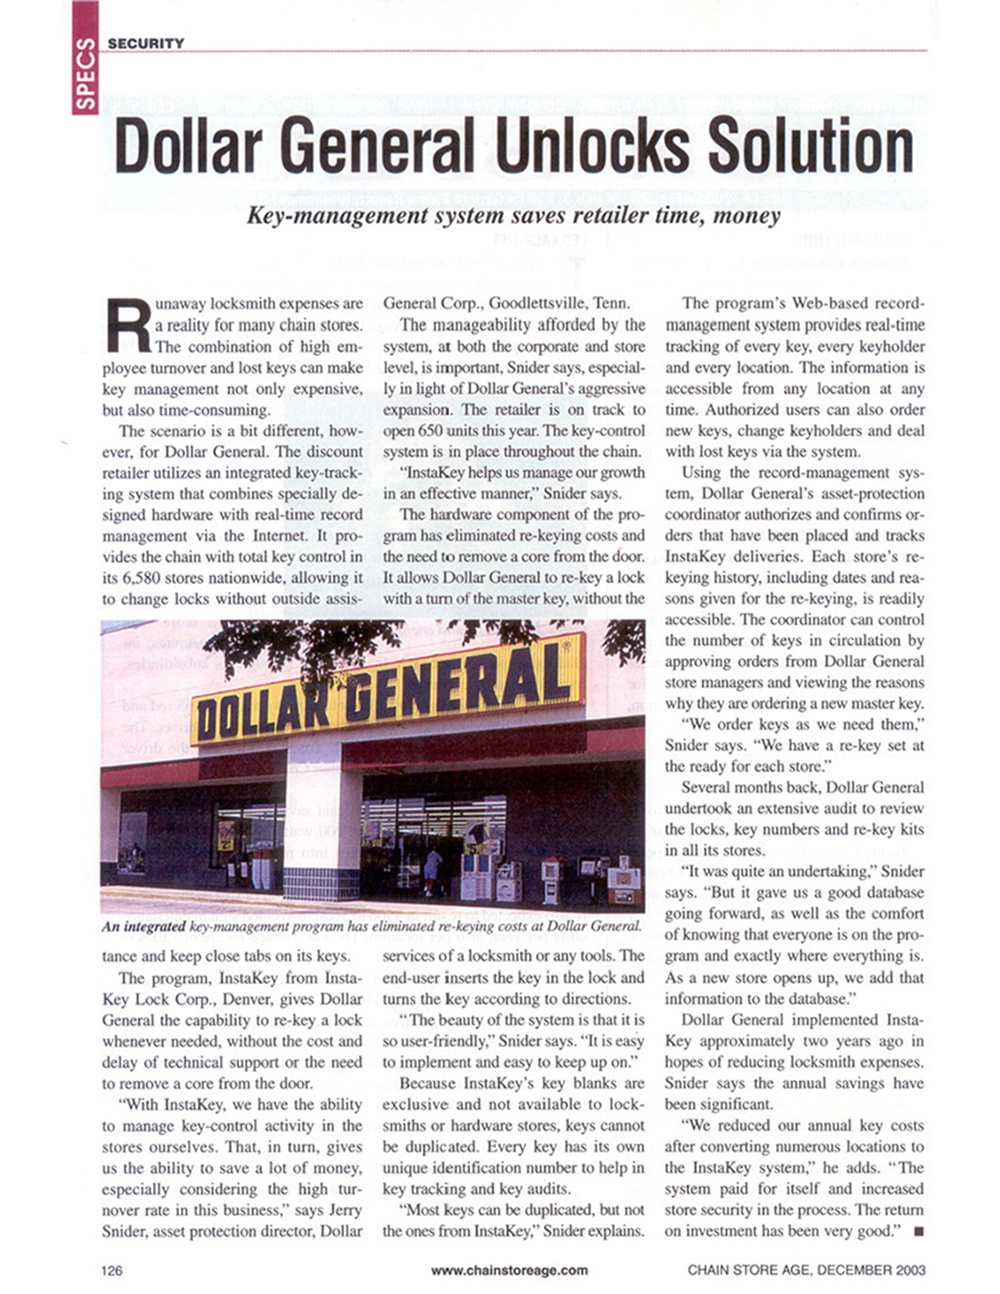 Dollar General Unlocks Solution